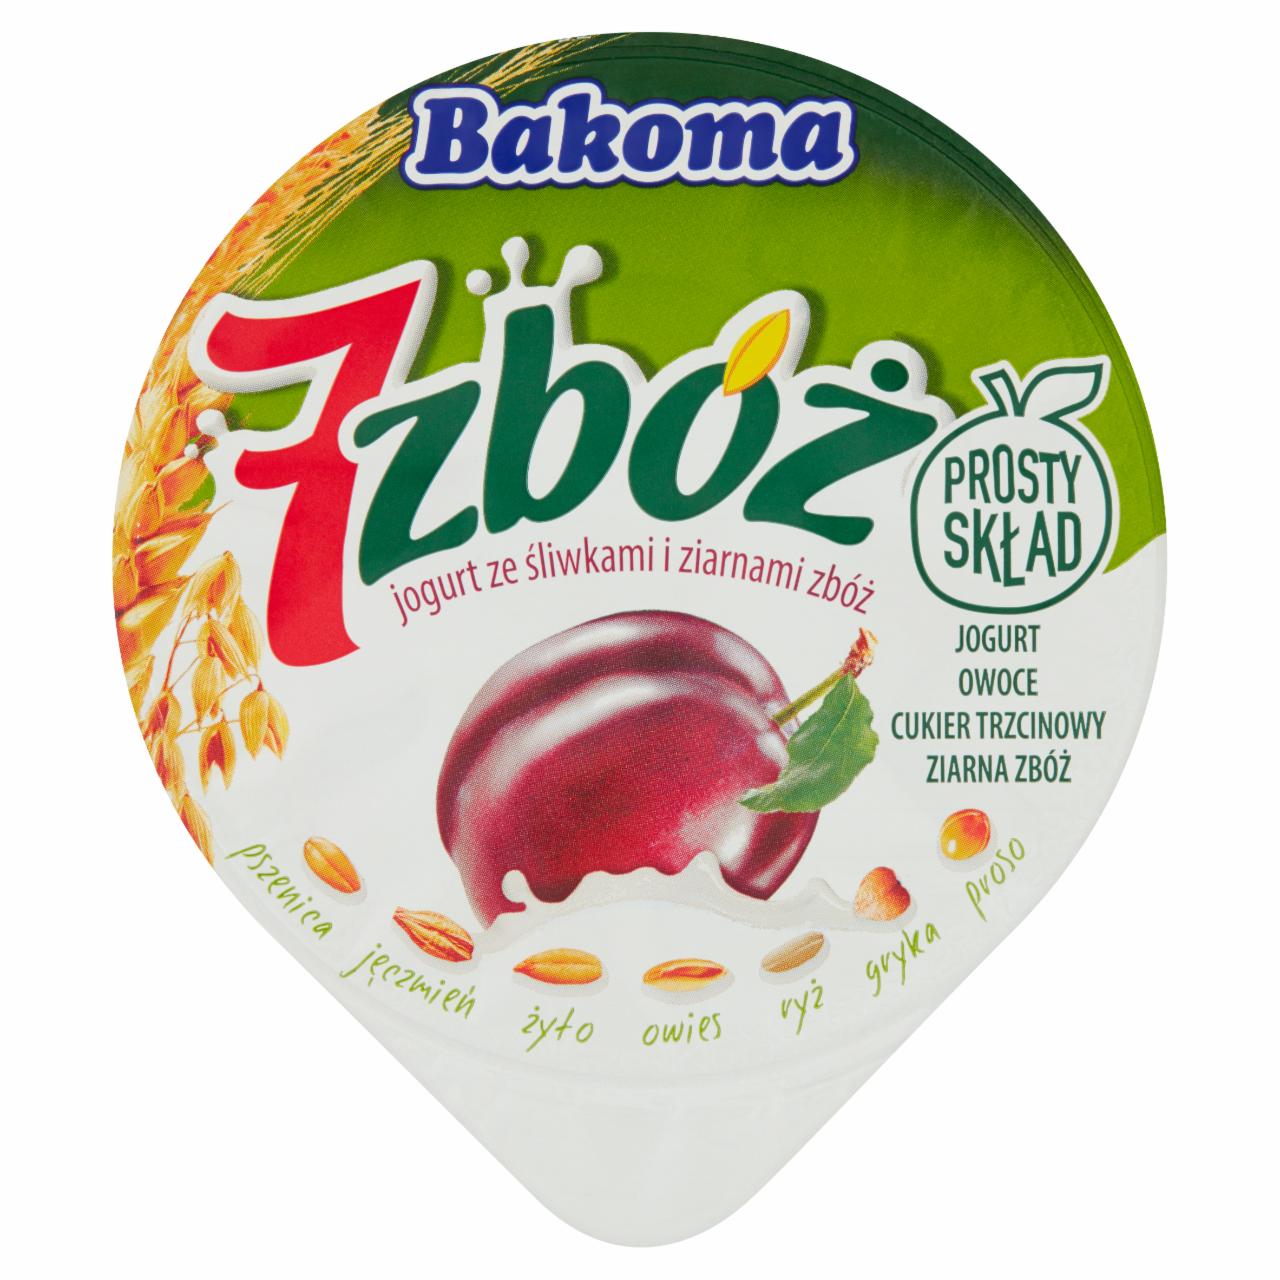 Zdjęcia - Bakoma 7 zbóż Jogurt ze śliwkami i ziarnami zbóż 140 g